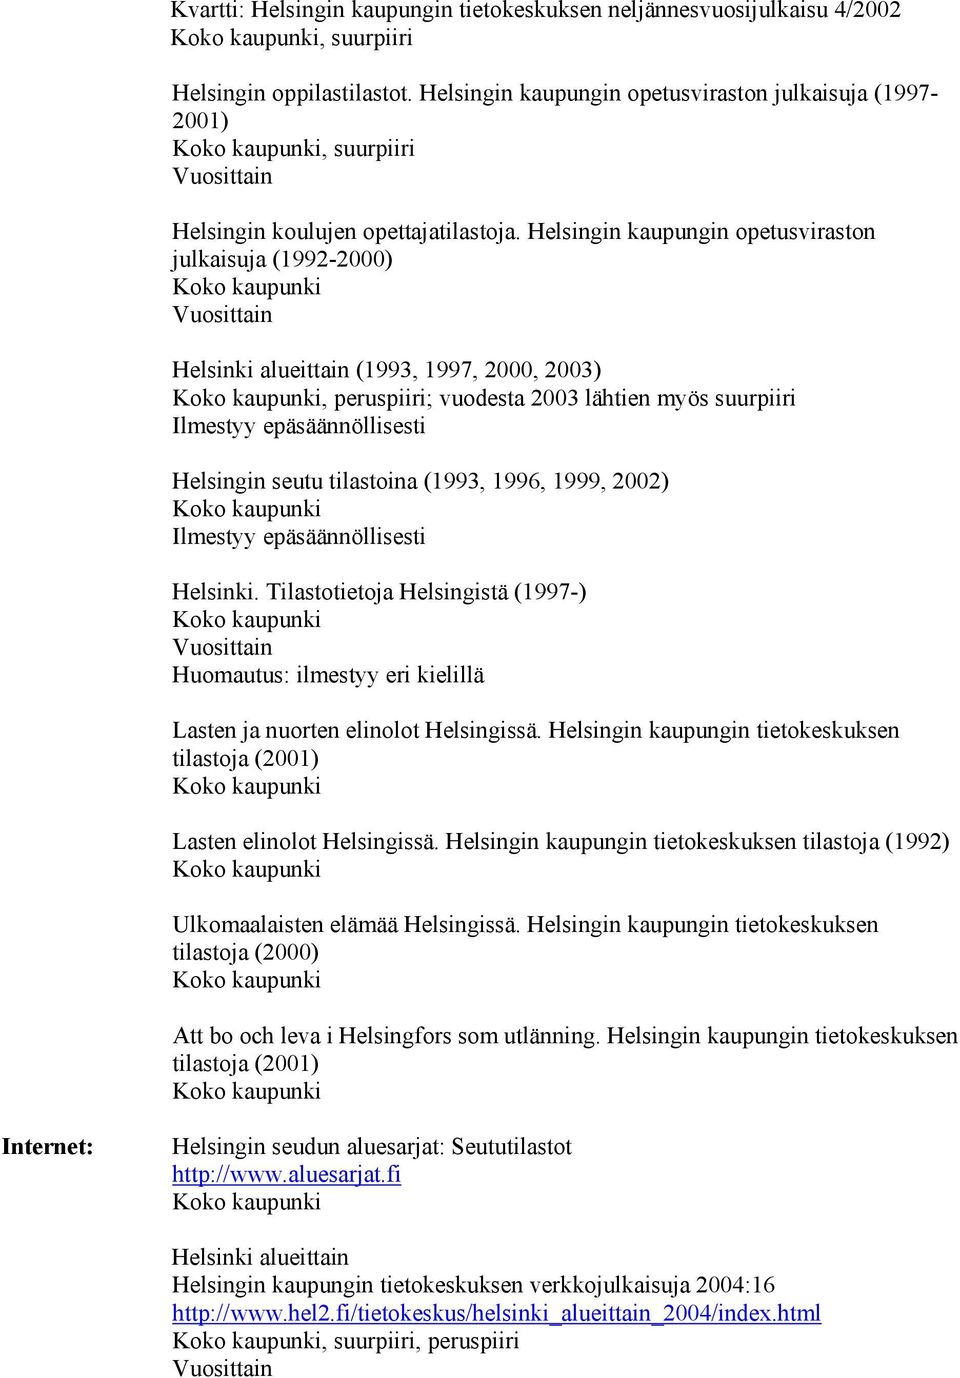 Helsingin kaupungin opetusviraston julkaisuja (1992-2000) Helsinki alueittain (1993, 1997, 2000, 2003), peruspiiri; vuodesta 2003 lähtien myös suurpiiri Helsingin seutu tilastoina (1993, 1996, 1999,